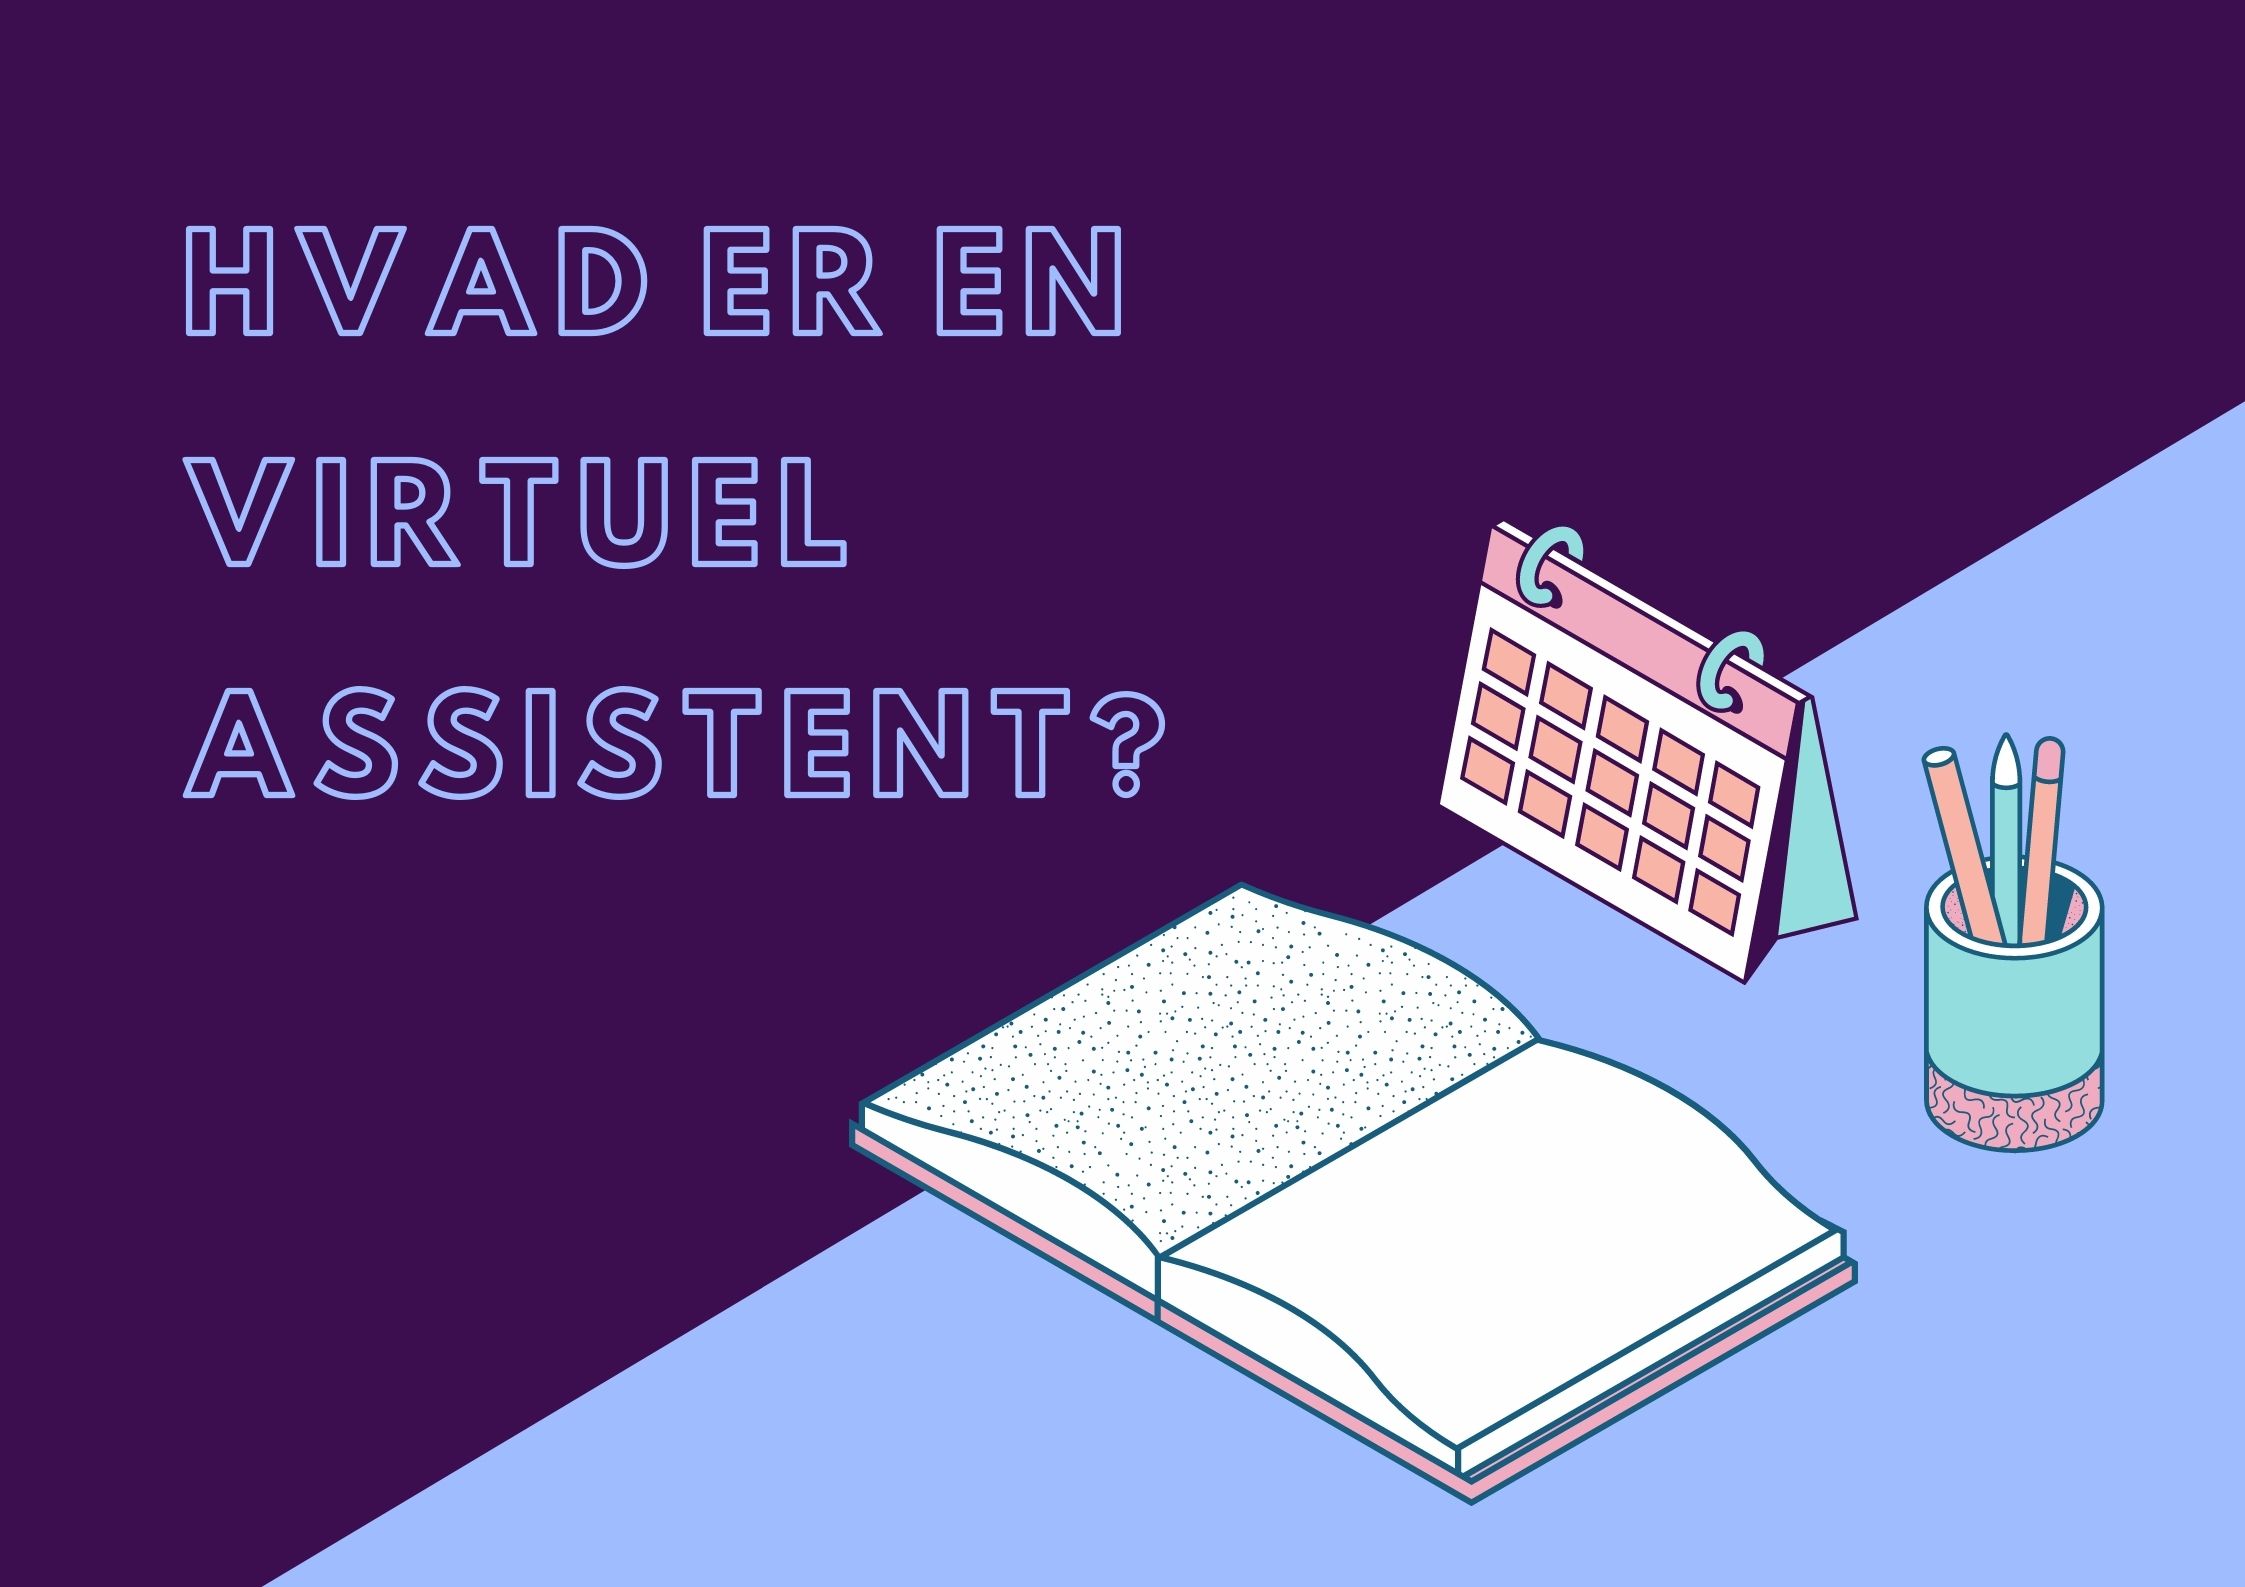 Hvad er en virtuel assistent?